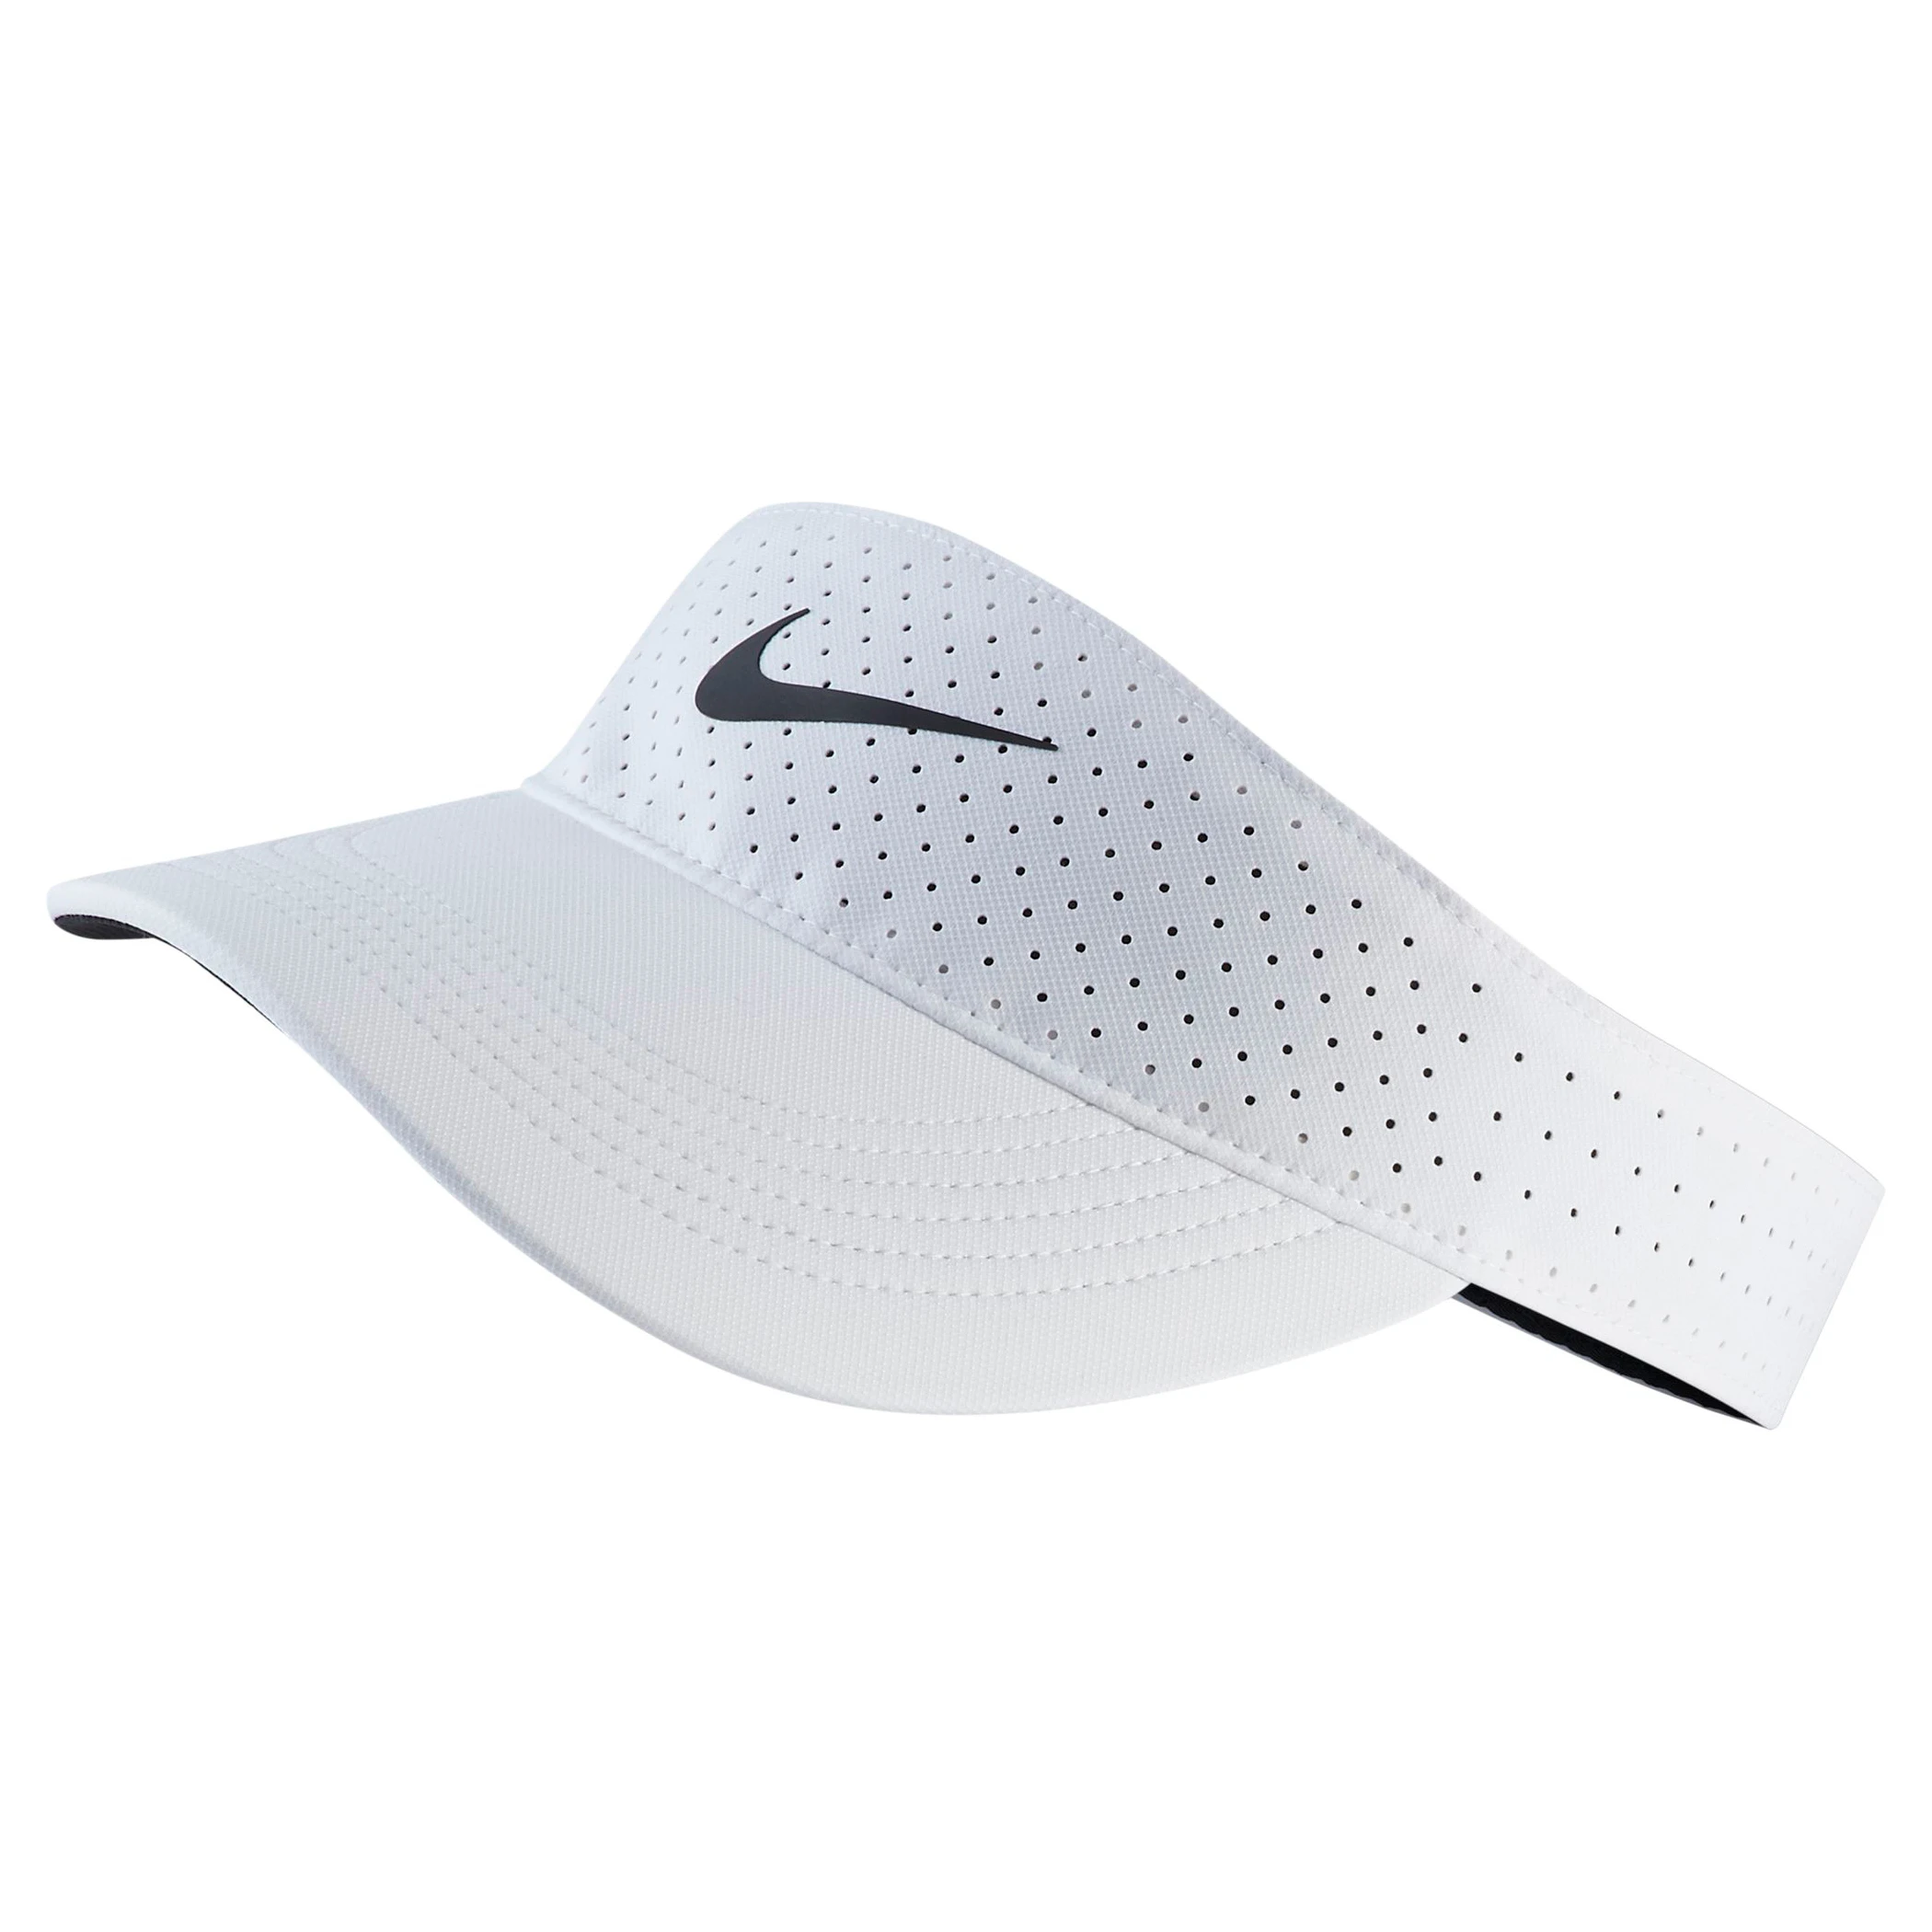 Nike Aerobill Visor - White/Black